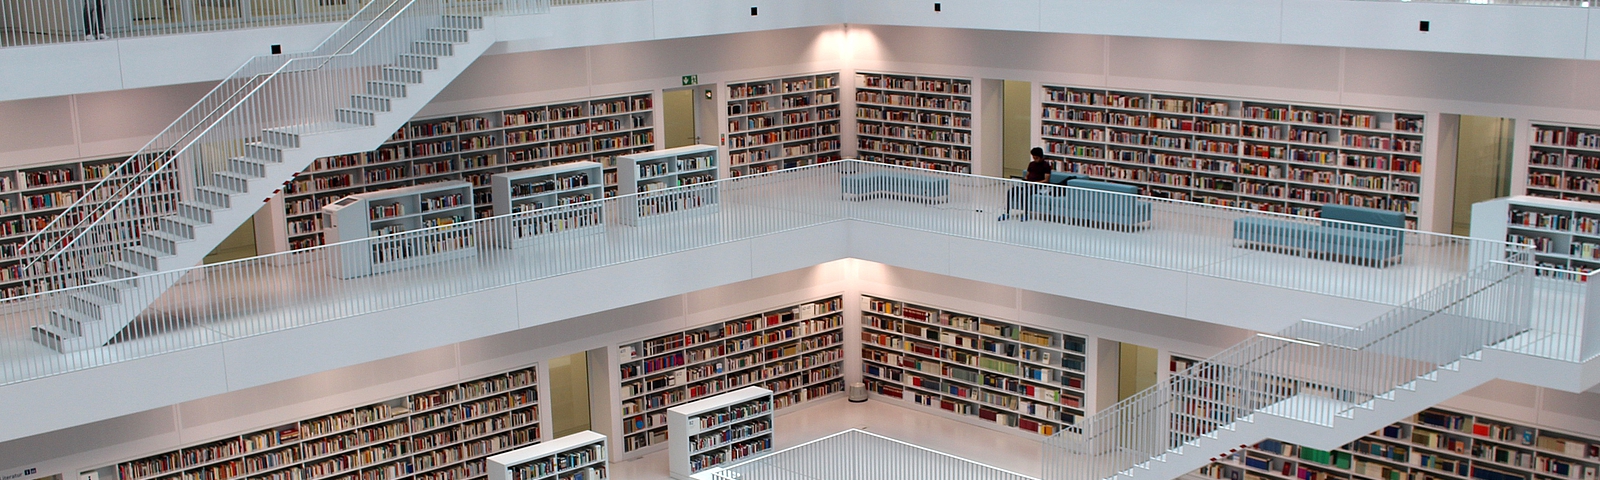 Photo: Mehrstöckige Bibliothek von innen 